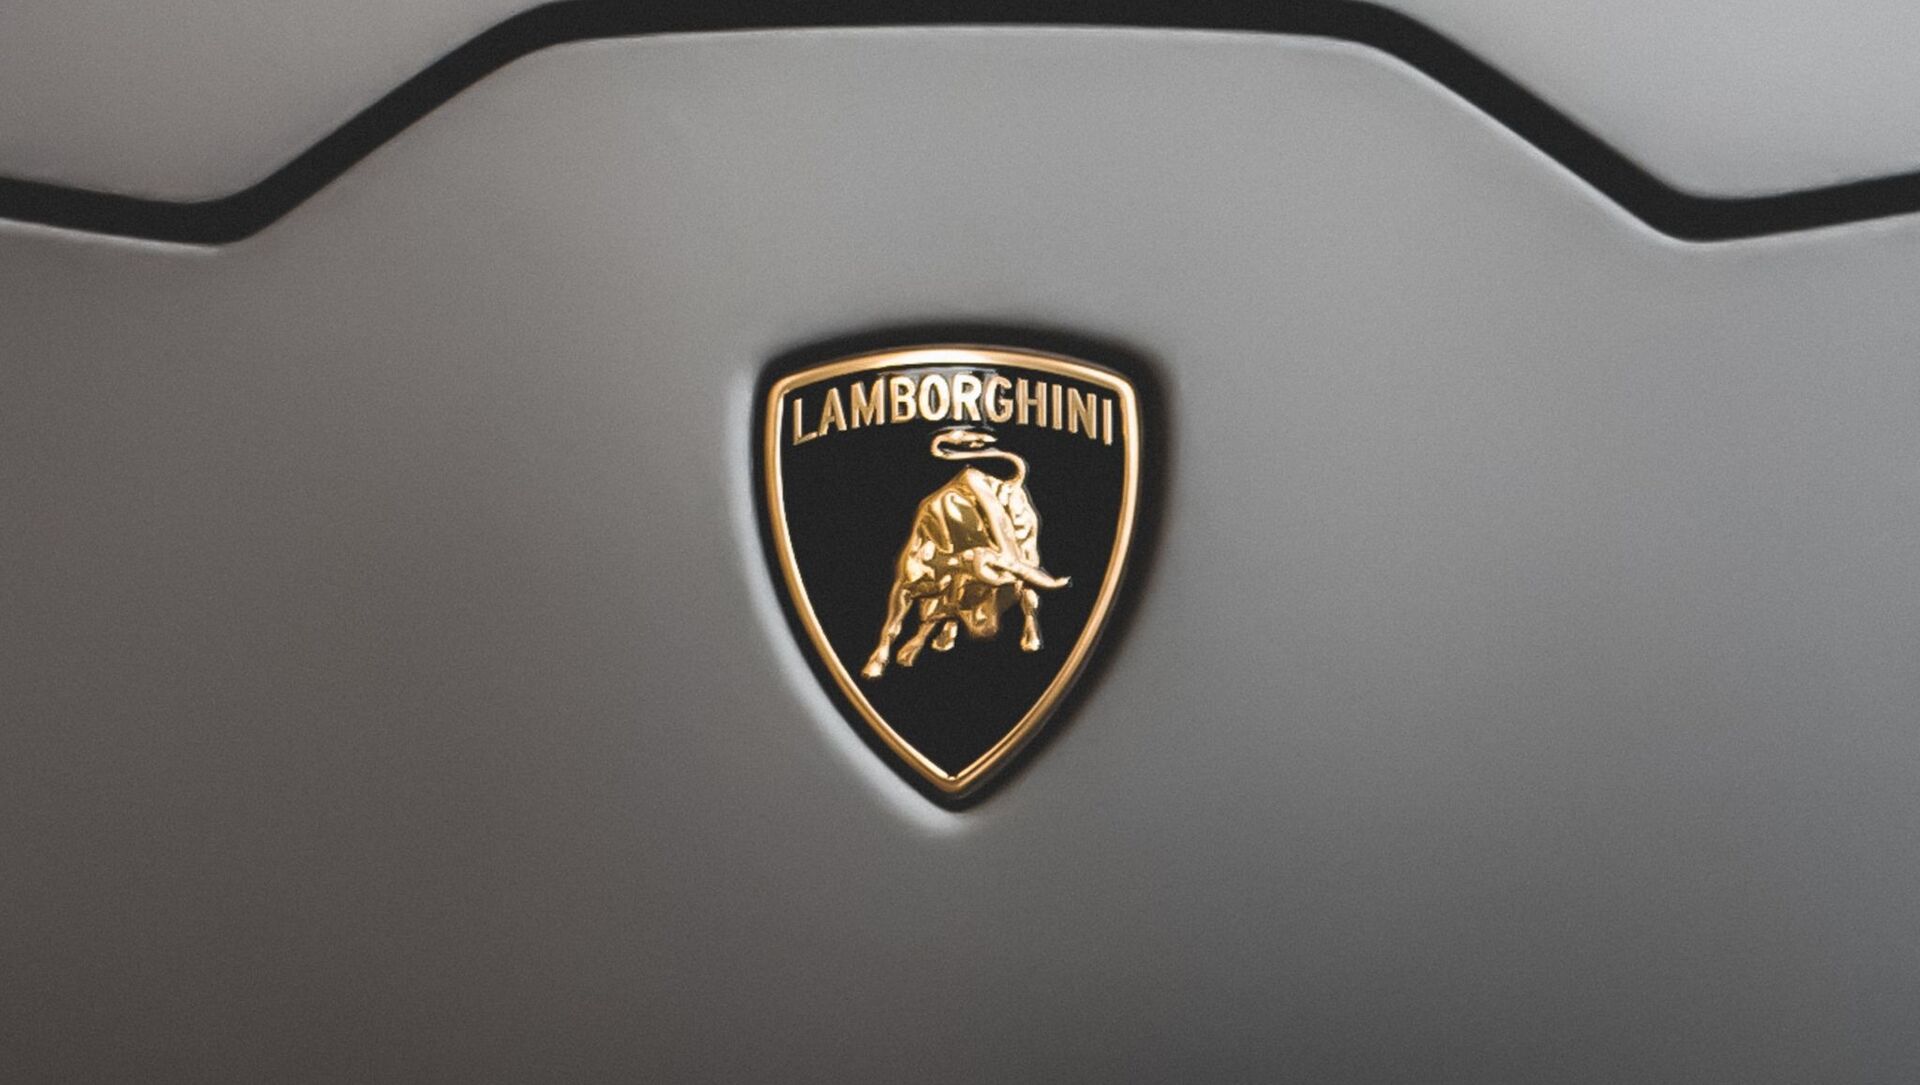 El dueño de un Lamborghini enfrenta cargos tras compartir un vídeo a más de  340 km/h - 28.01.2021, Sputnik Mundo